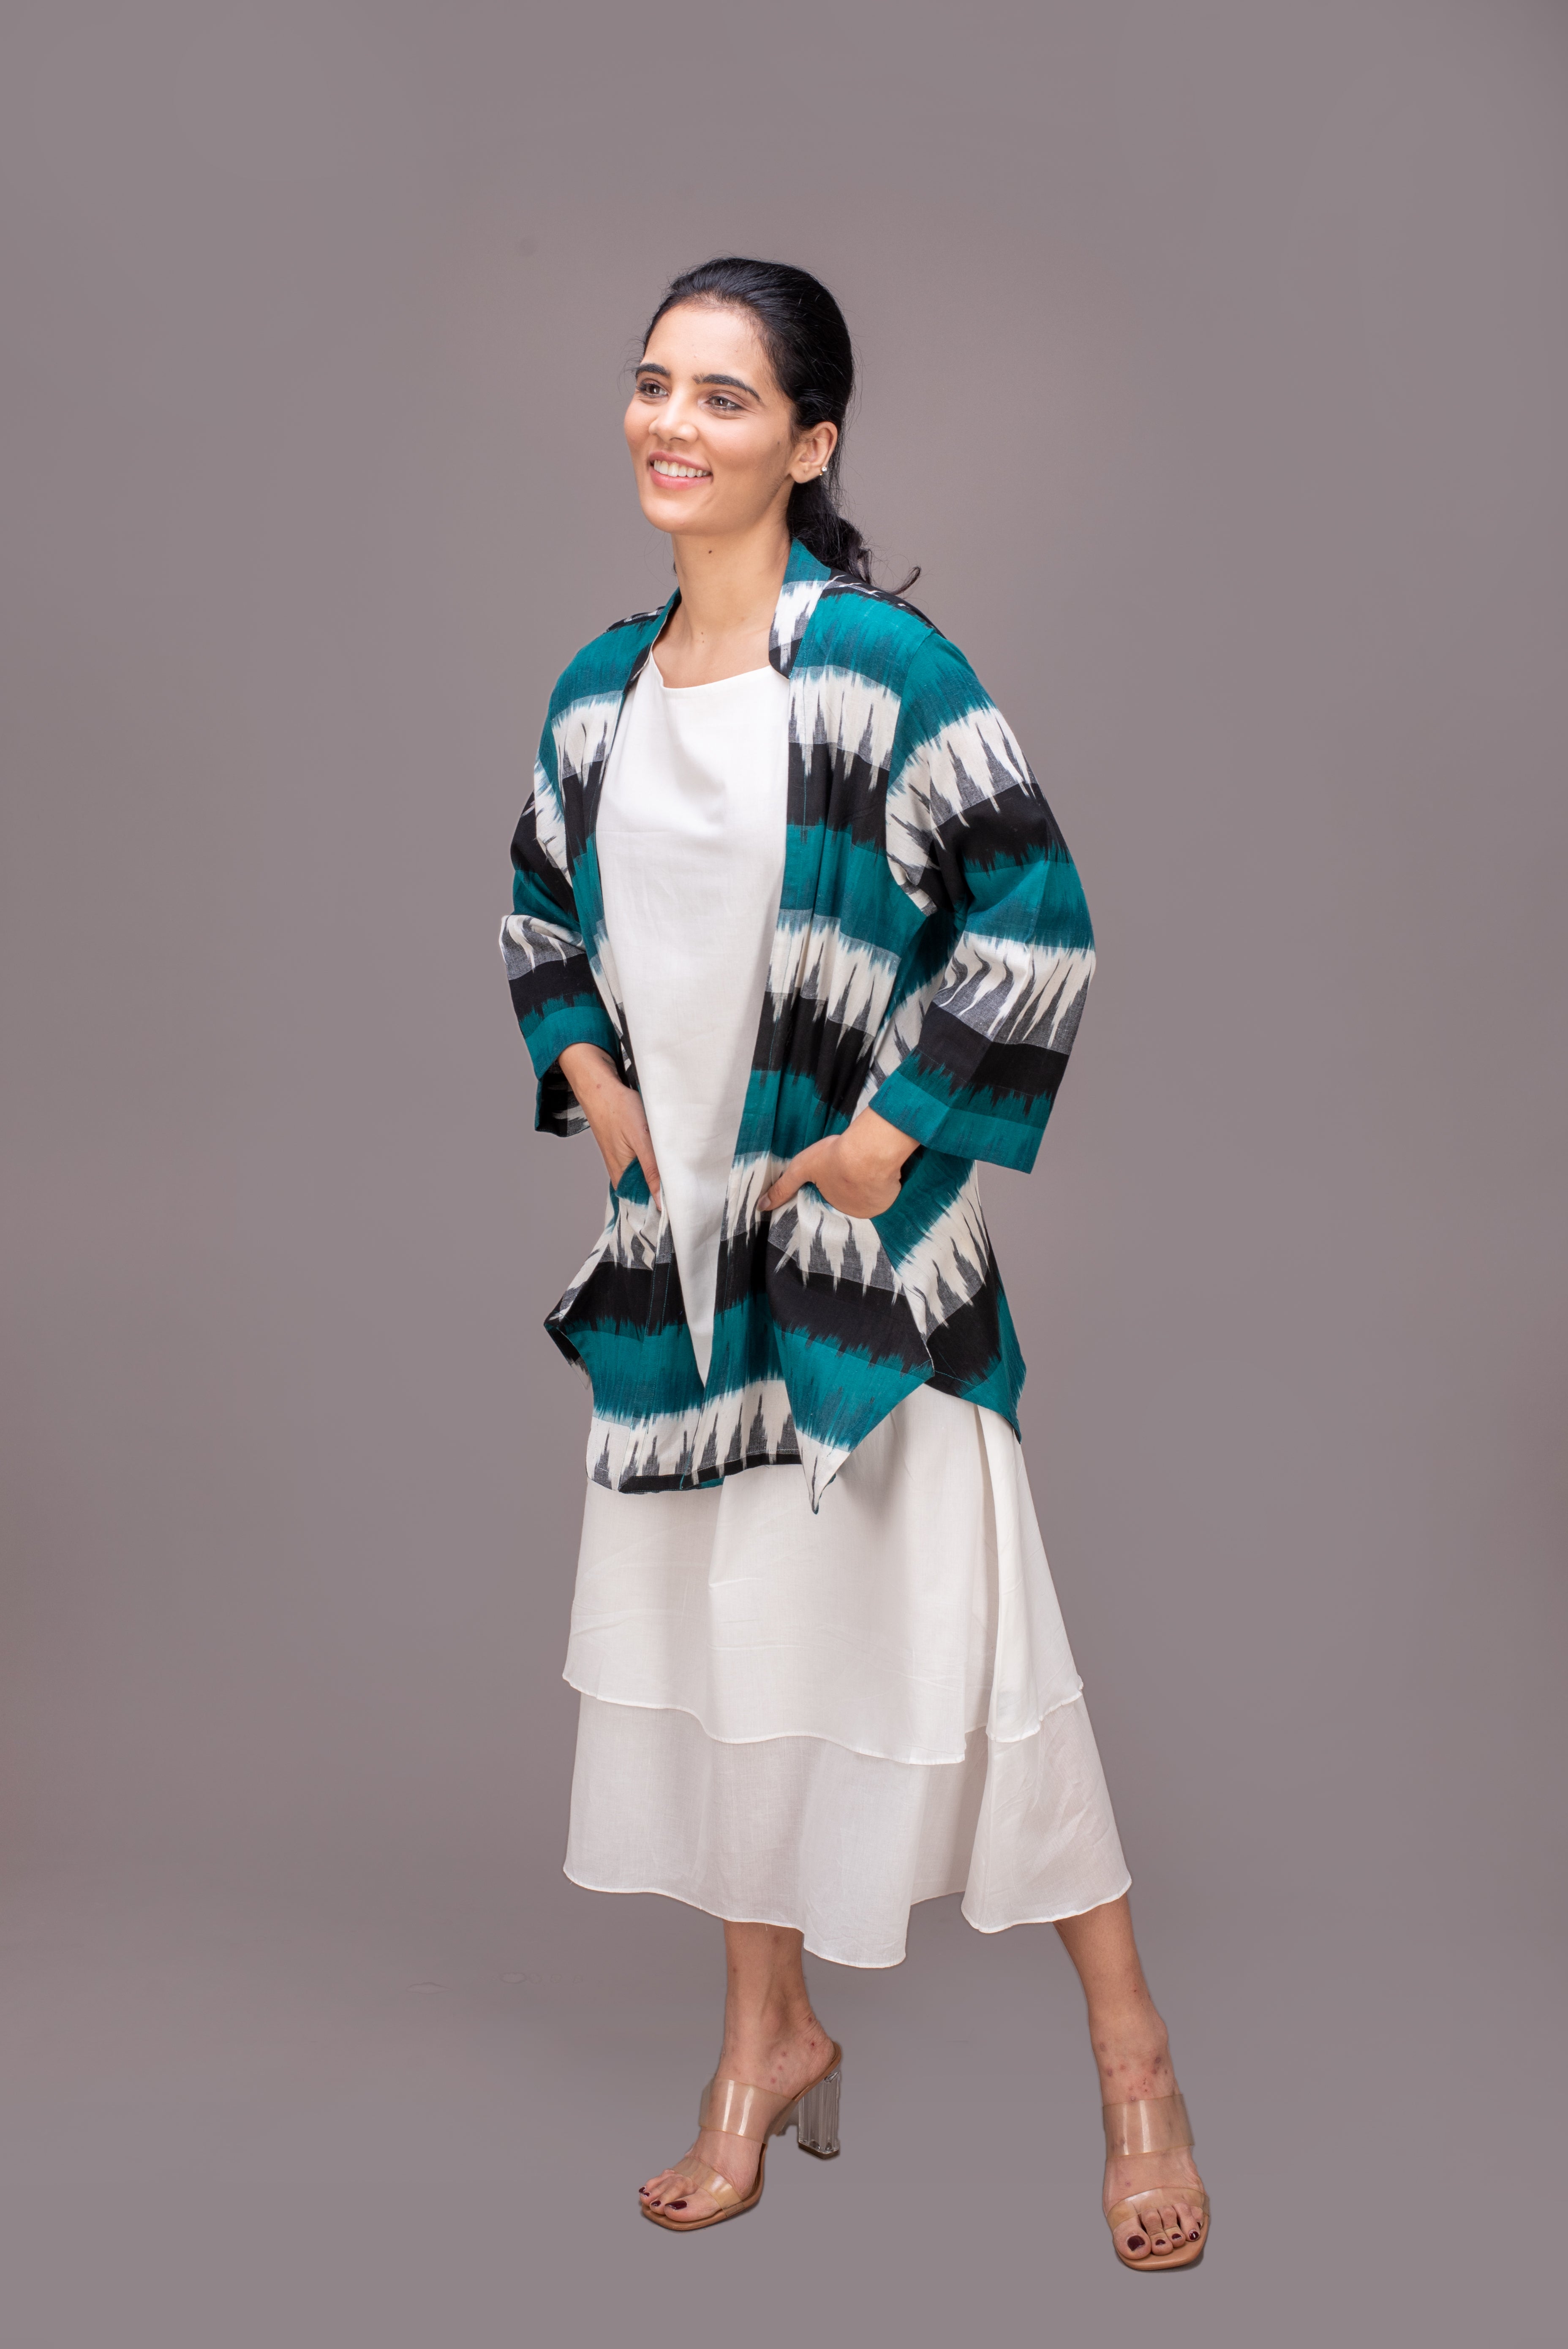 513-323 Whitelotus "Kimono" Women's coat